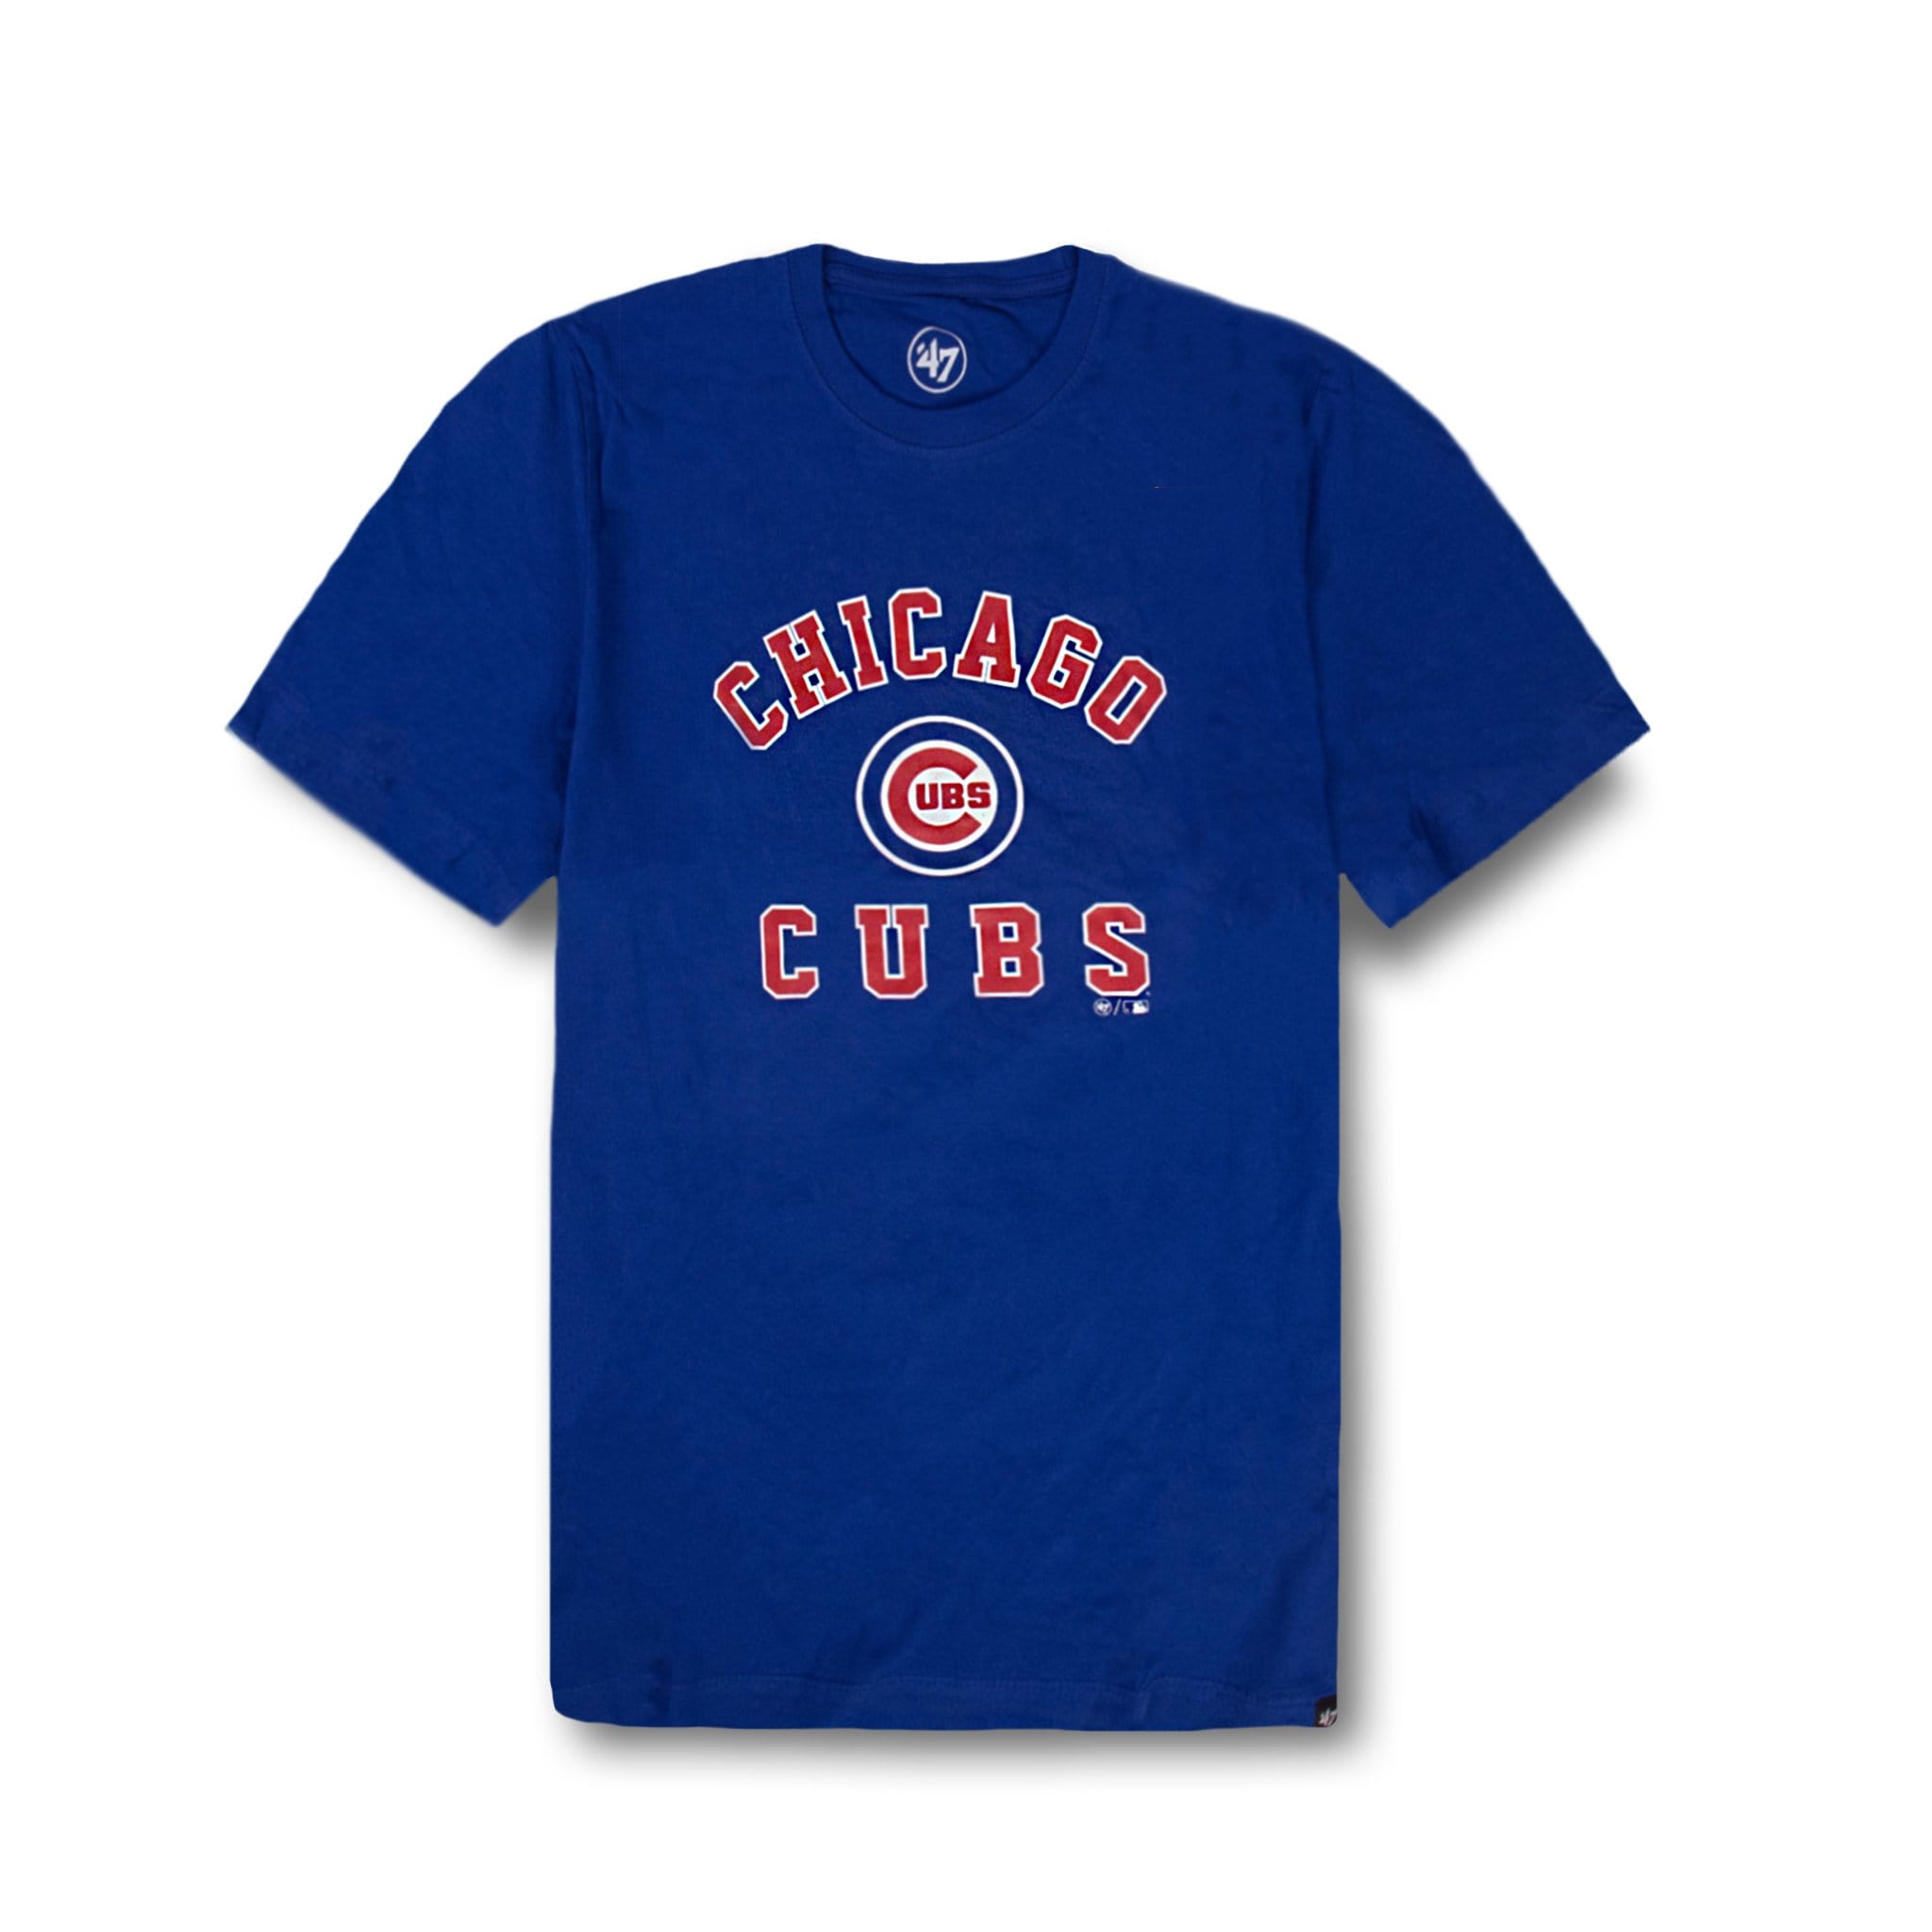 official cubs shirt